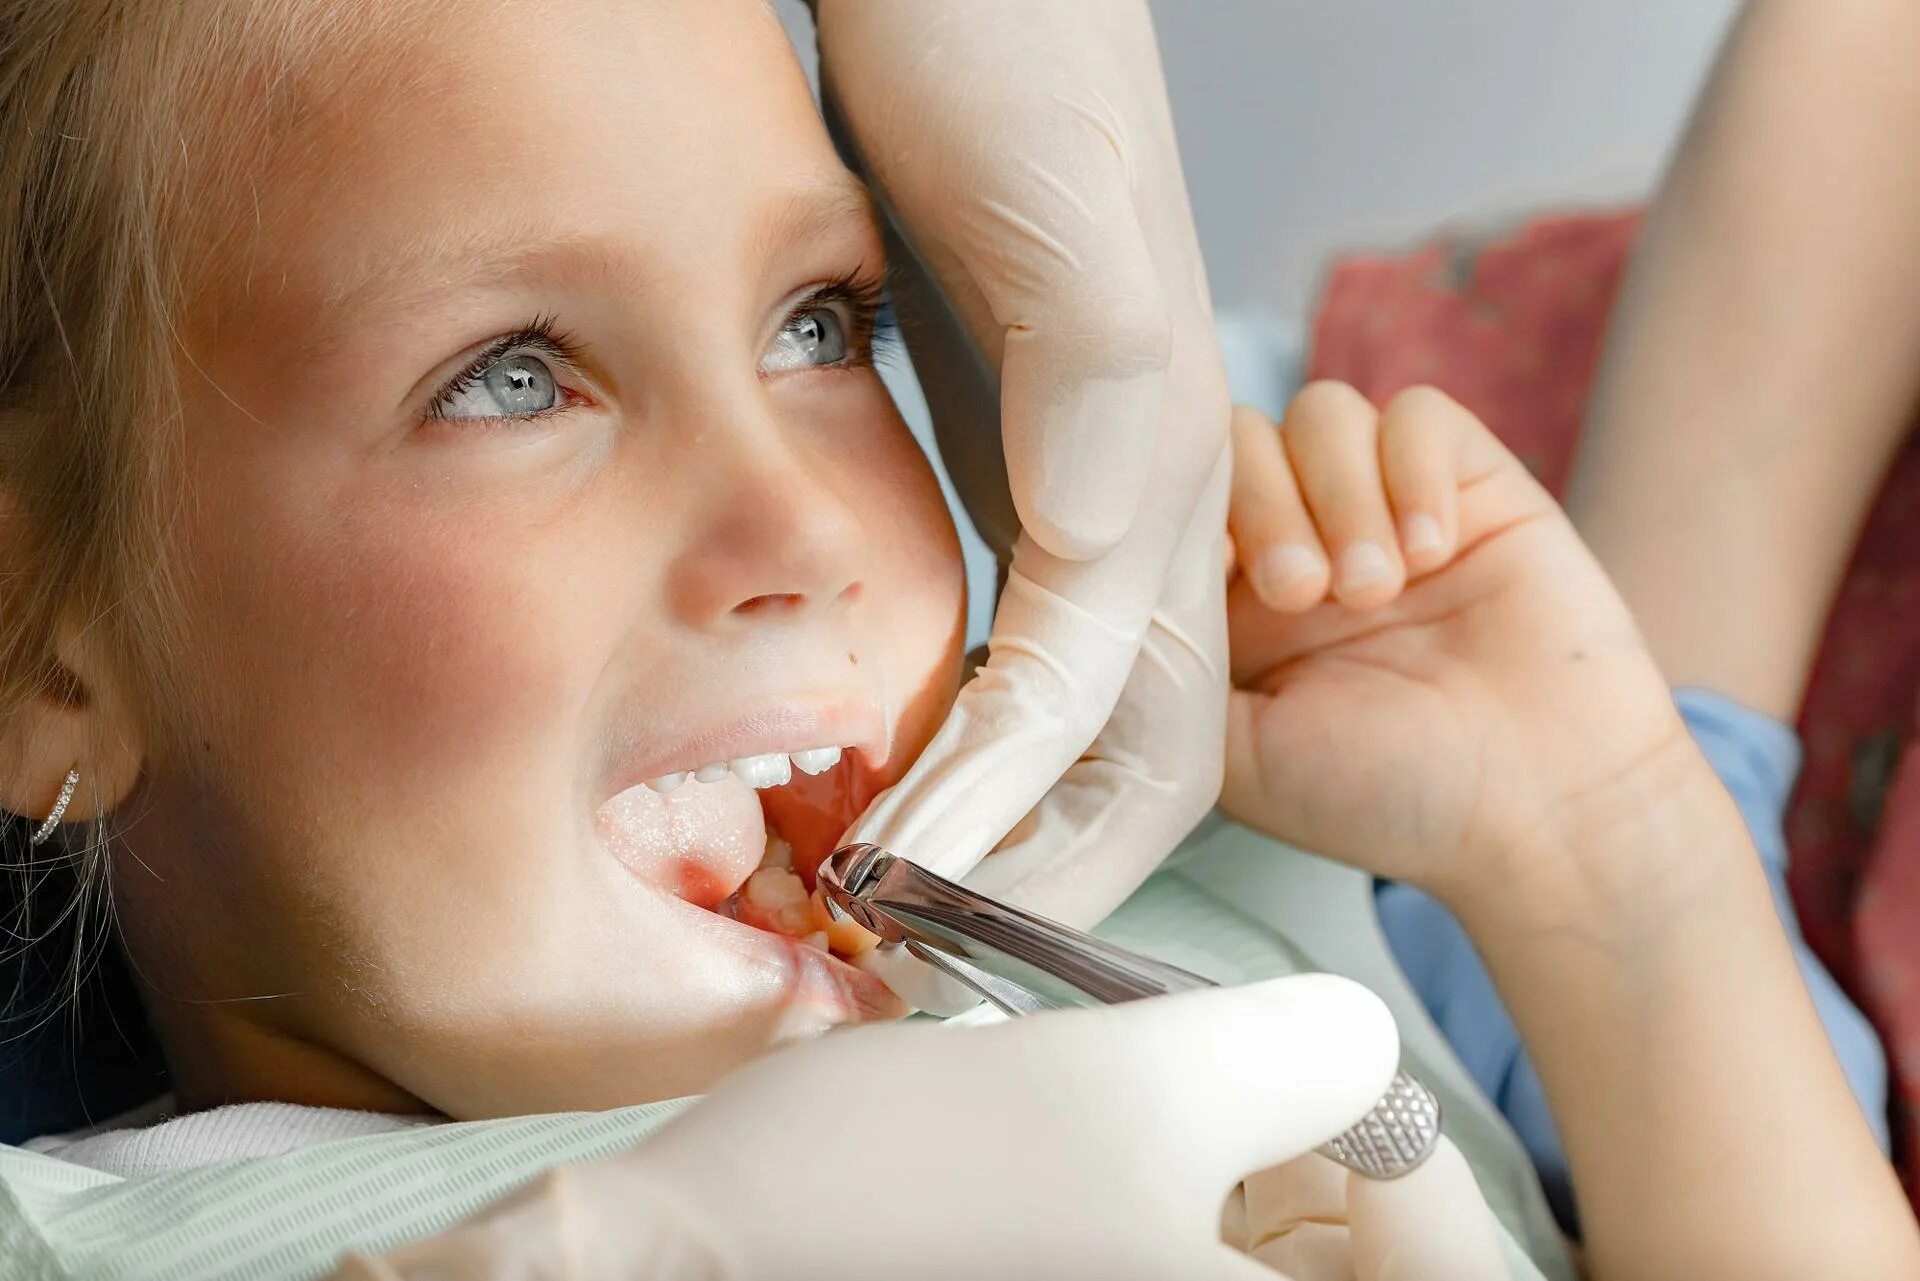 Удалять зуб ребенку 5 лет